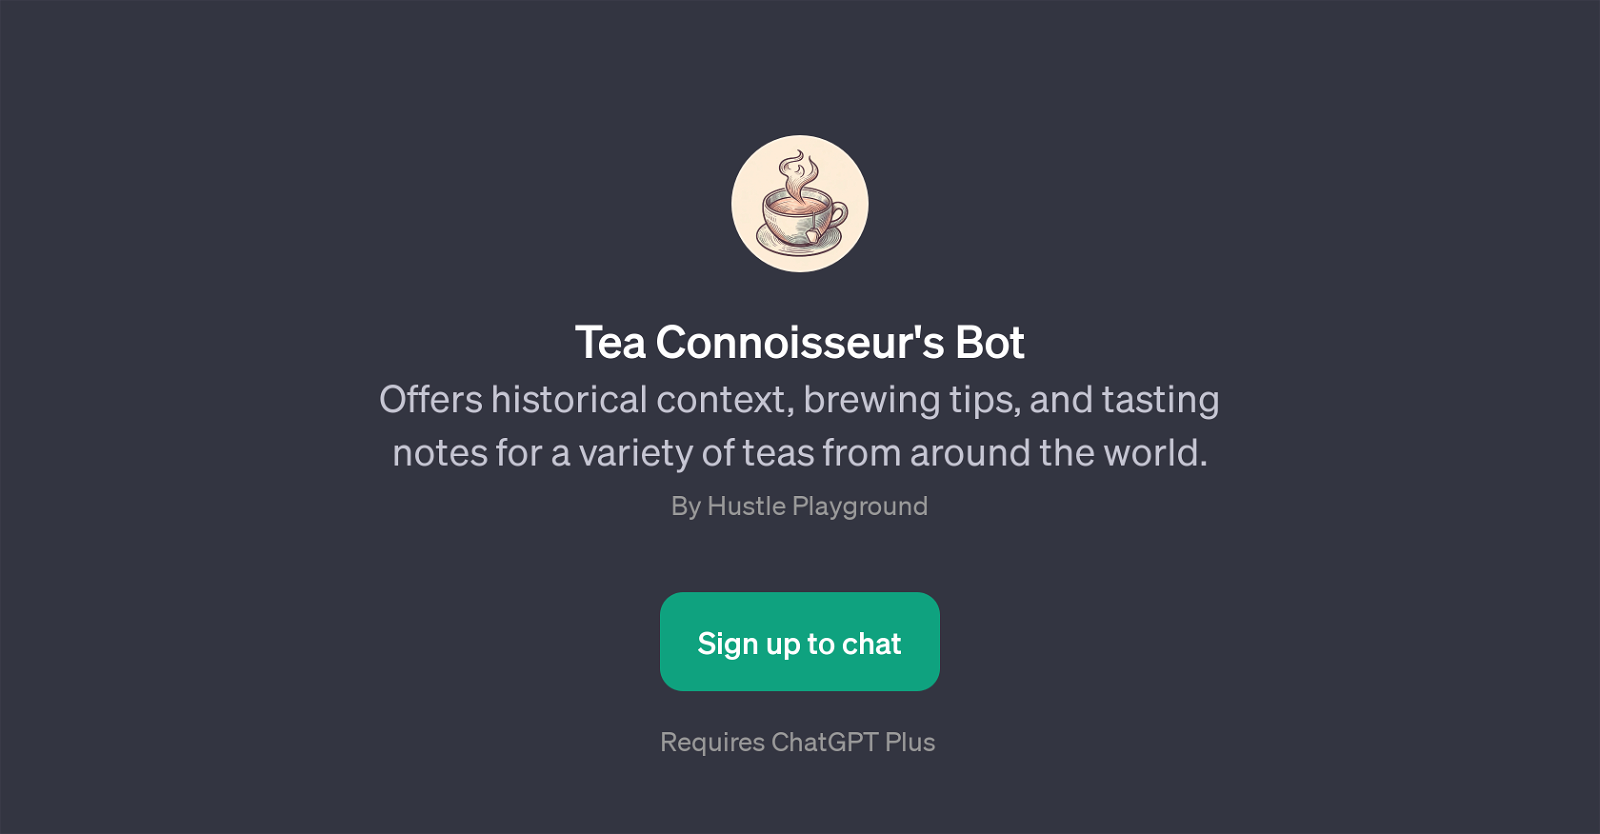 Tea Connoisseur's Bot website